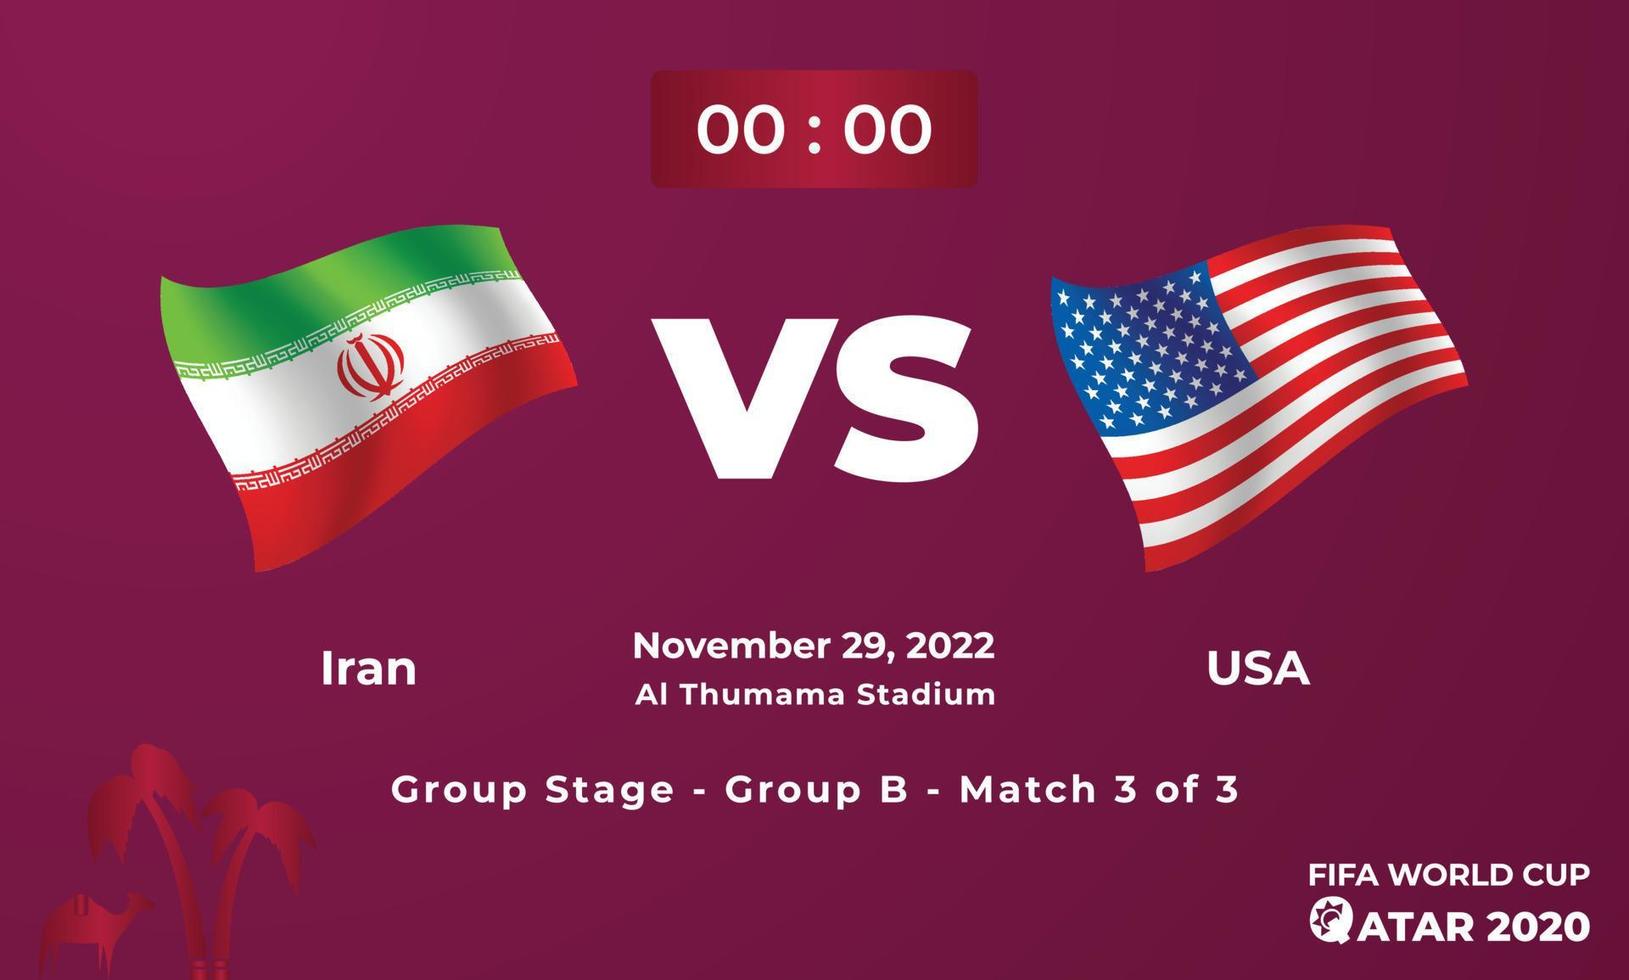 mi sono imbattuto vs Stati Uniti d'America calcio modello di corrispondenza, fifa mondo tazza nel Qatar 2022 vettore